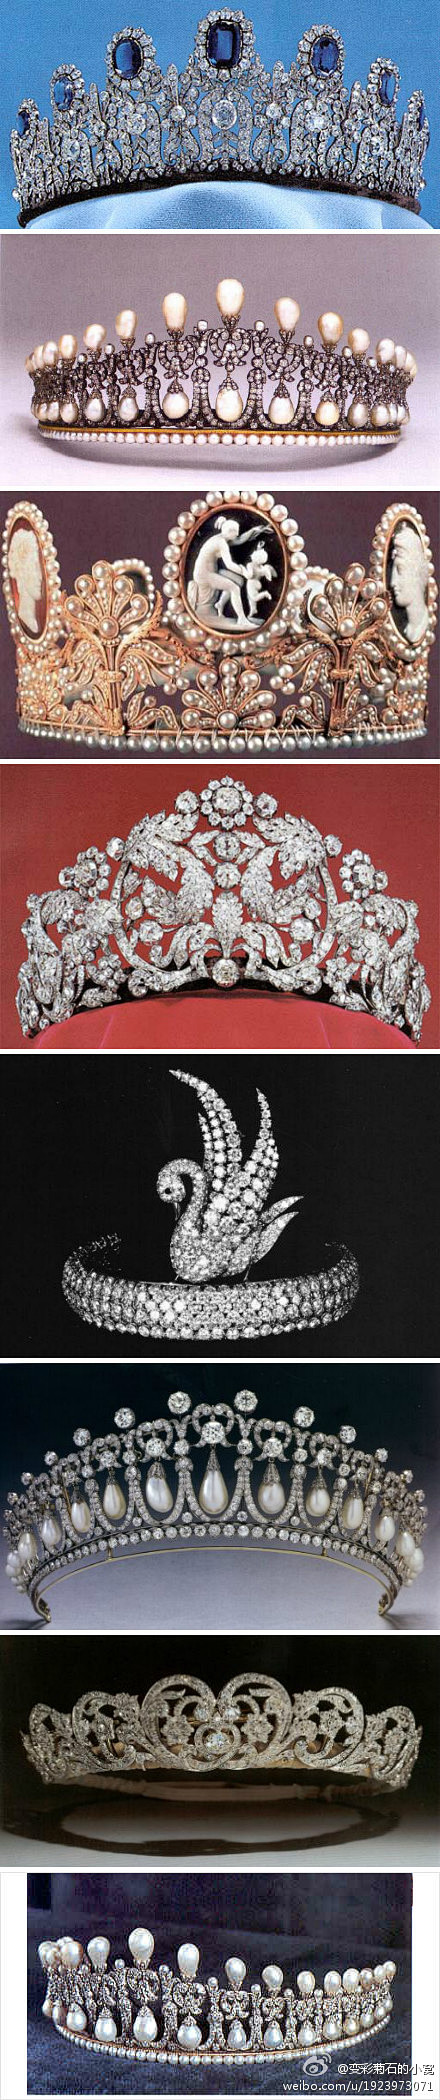 各國王妃皇冠 这顶蓝宝石镶钻王冠也属于瑞...